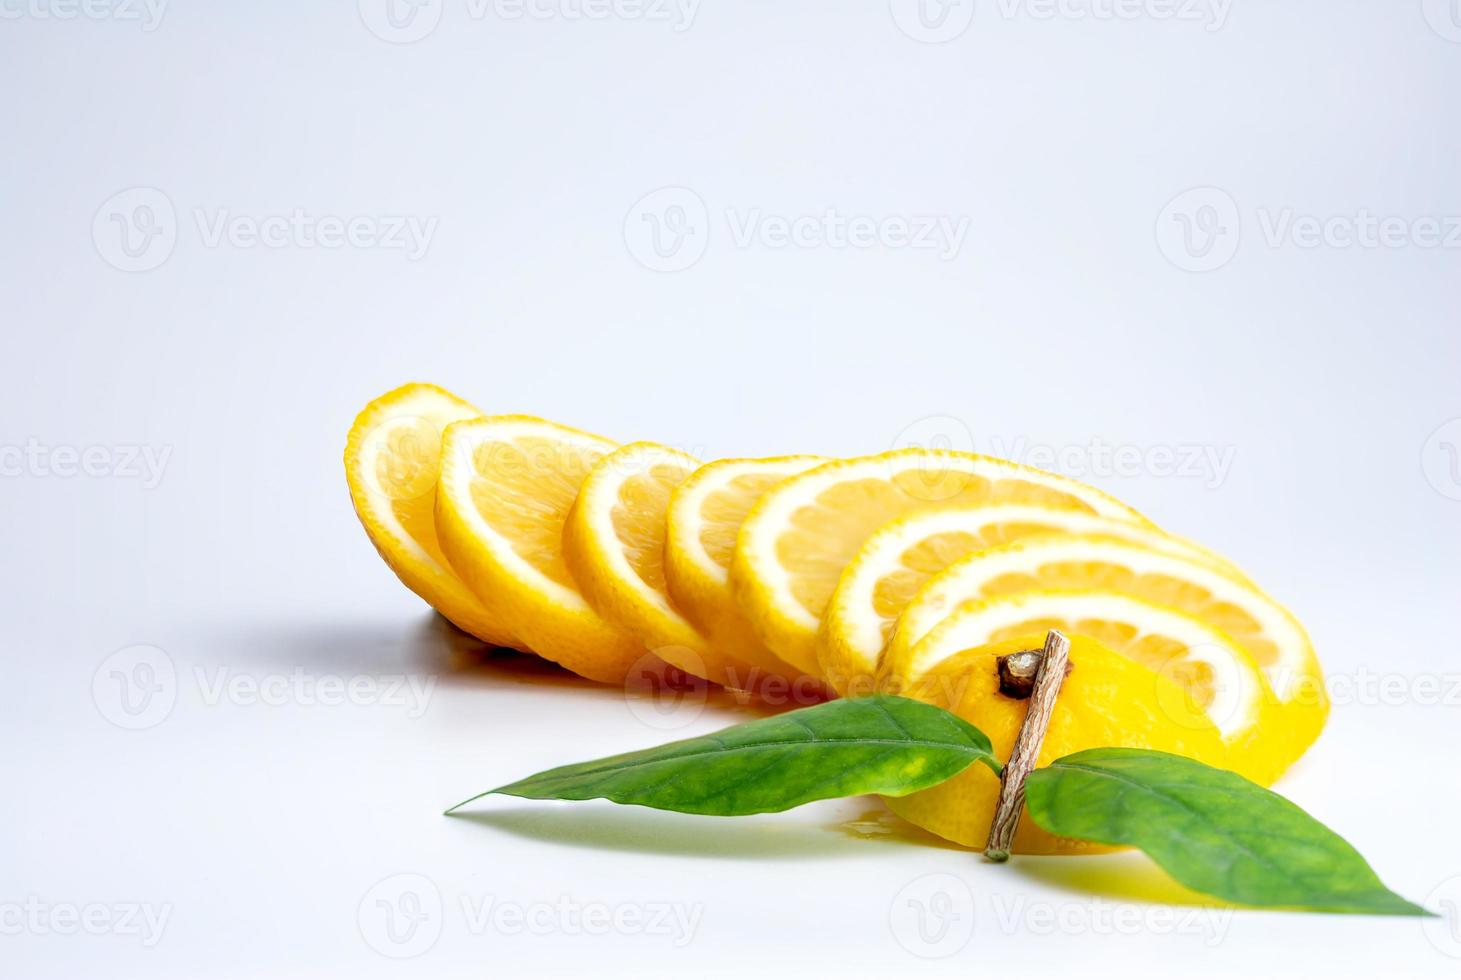 la fetta di limone e limone sullo sfondo bianco foto